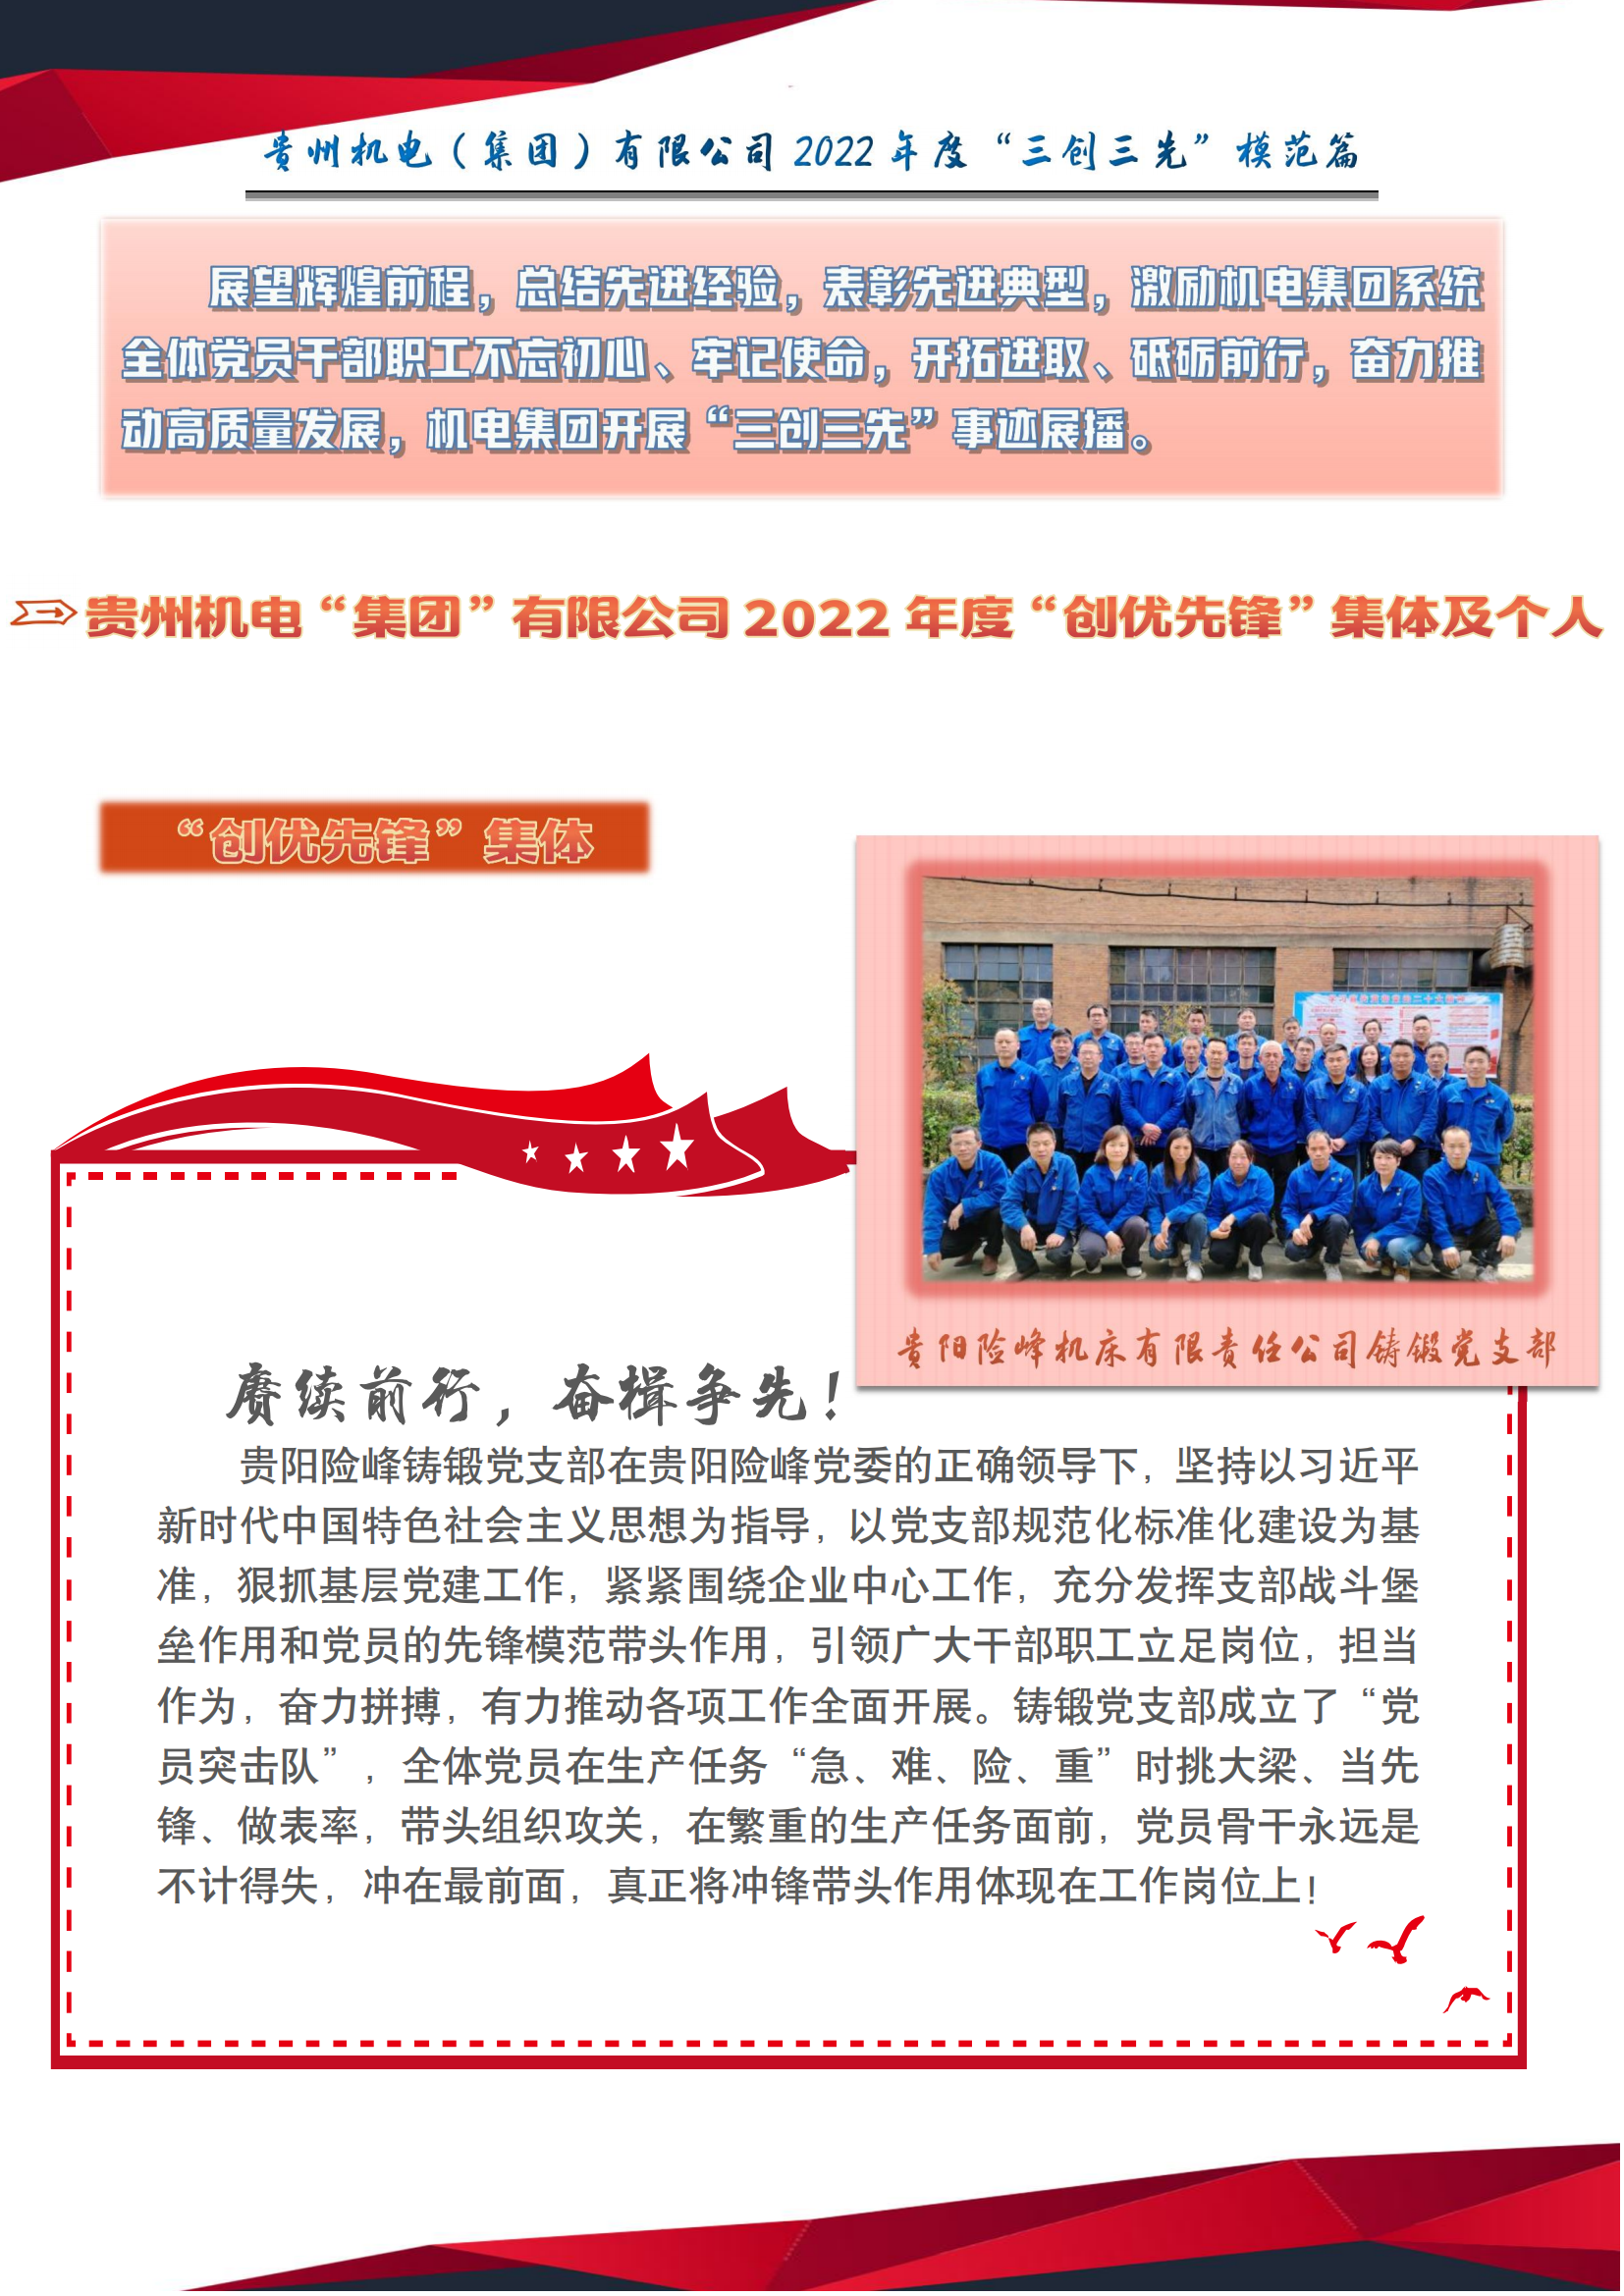 【身边榜样】盈球体育(中国)股份有限公司2022年“三创三先”事迹展播之“创优先锋”篇